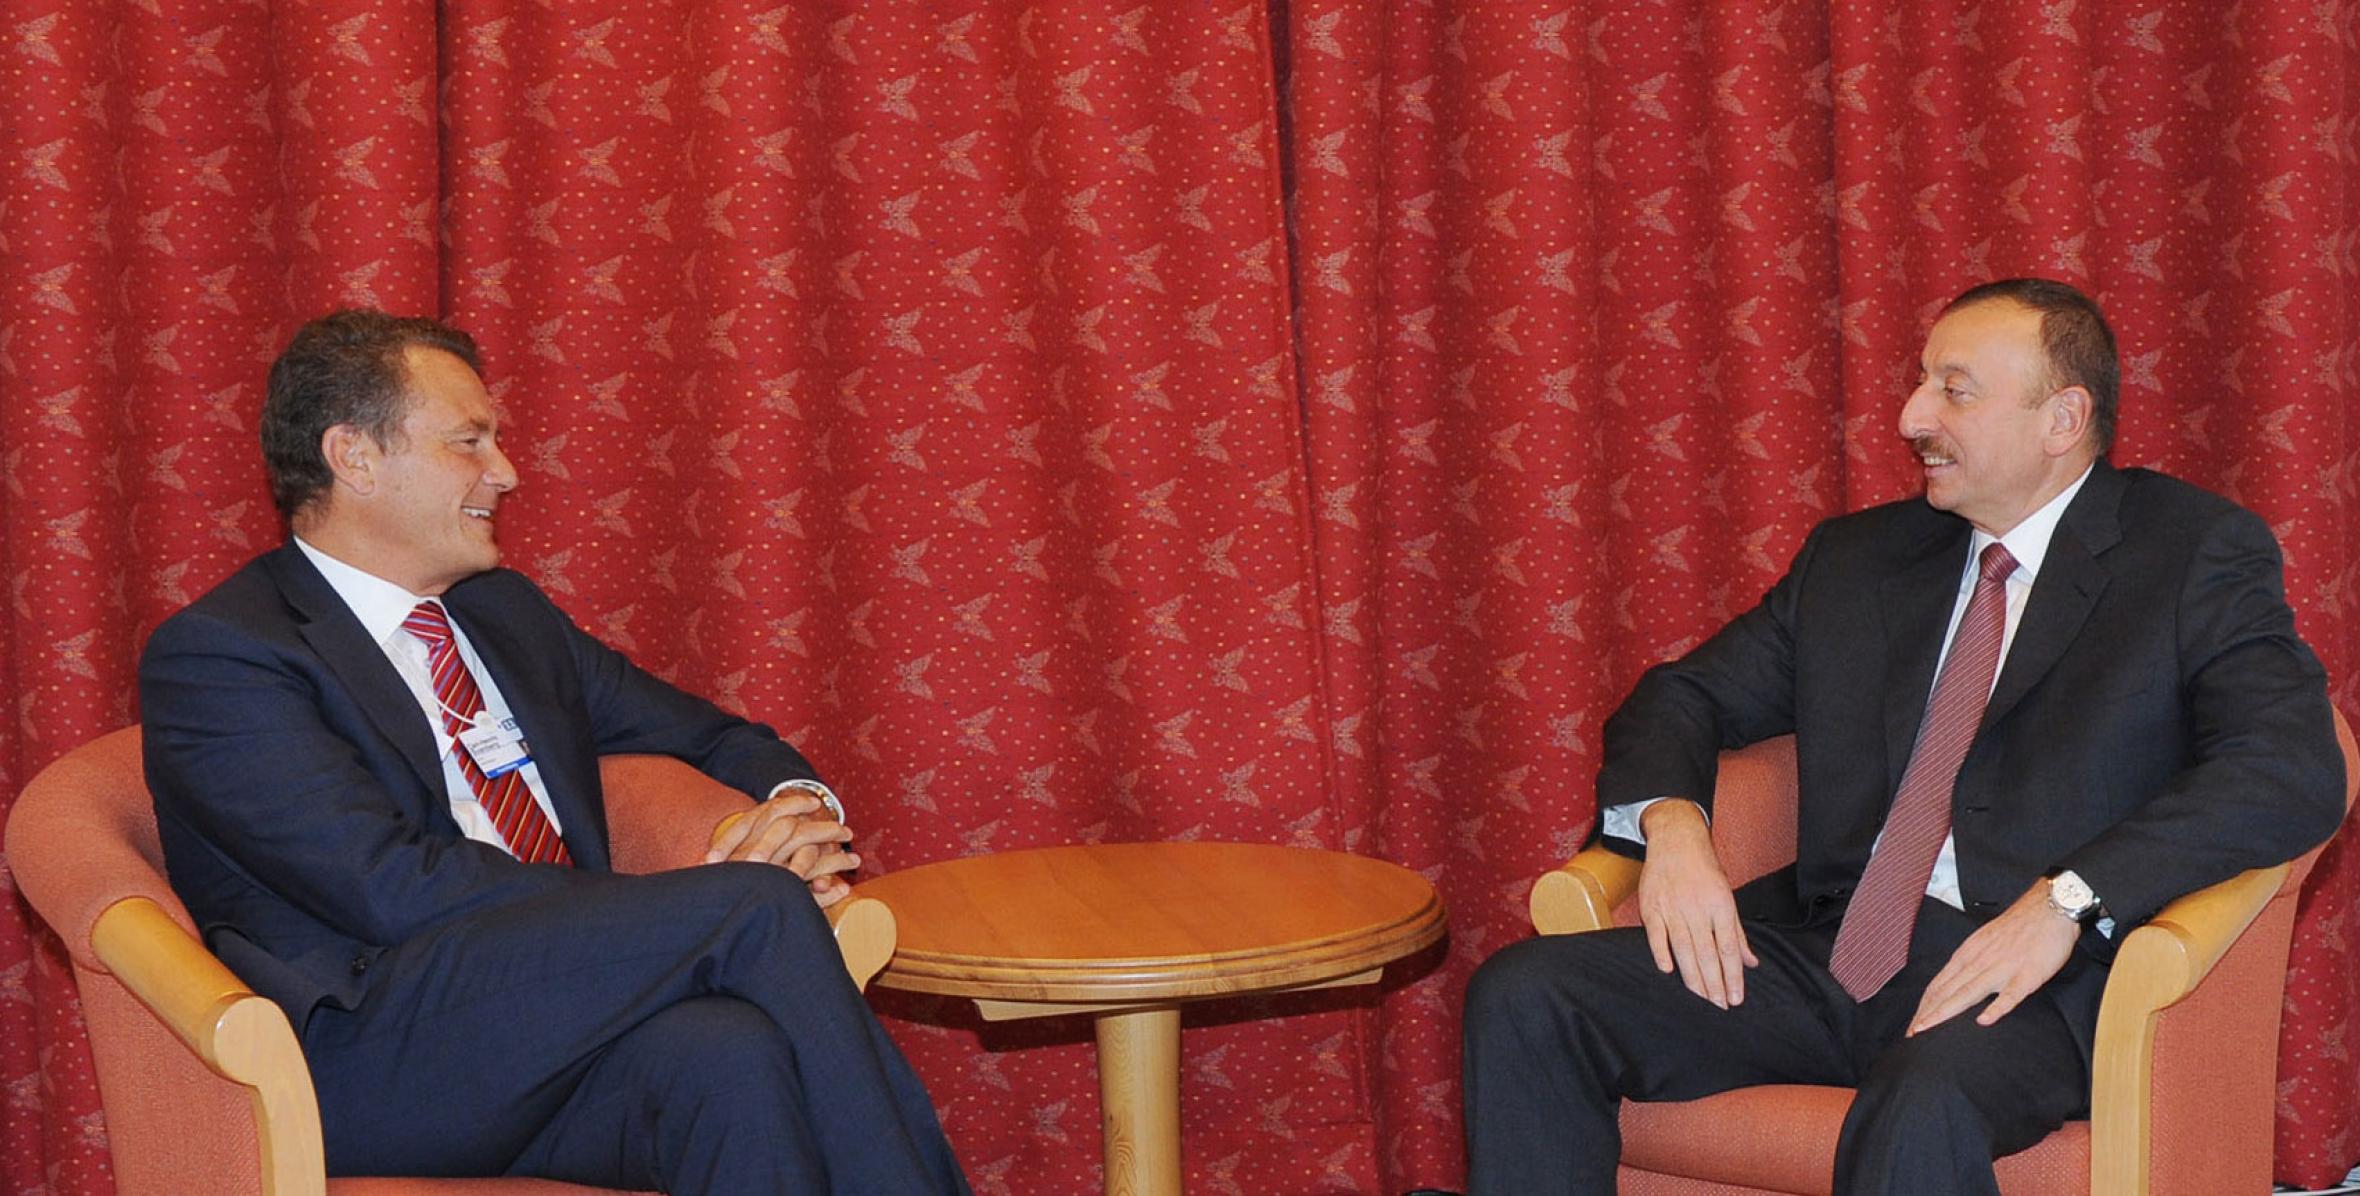 Ильхам Алиев встретился с председателем Совета директоров и неисполнительным директором компании bp